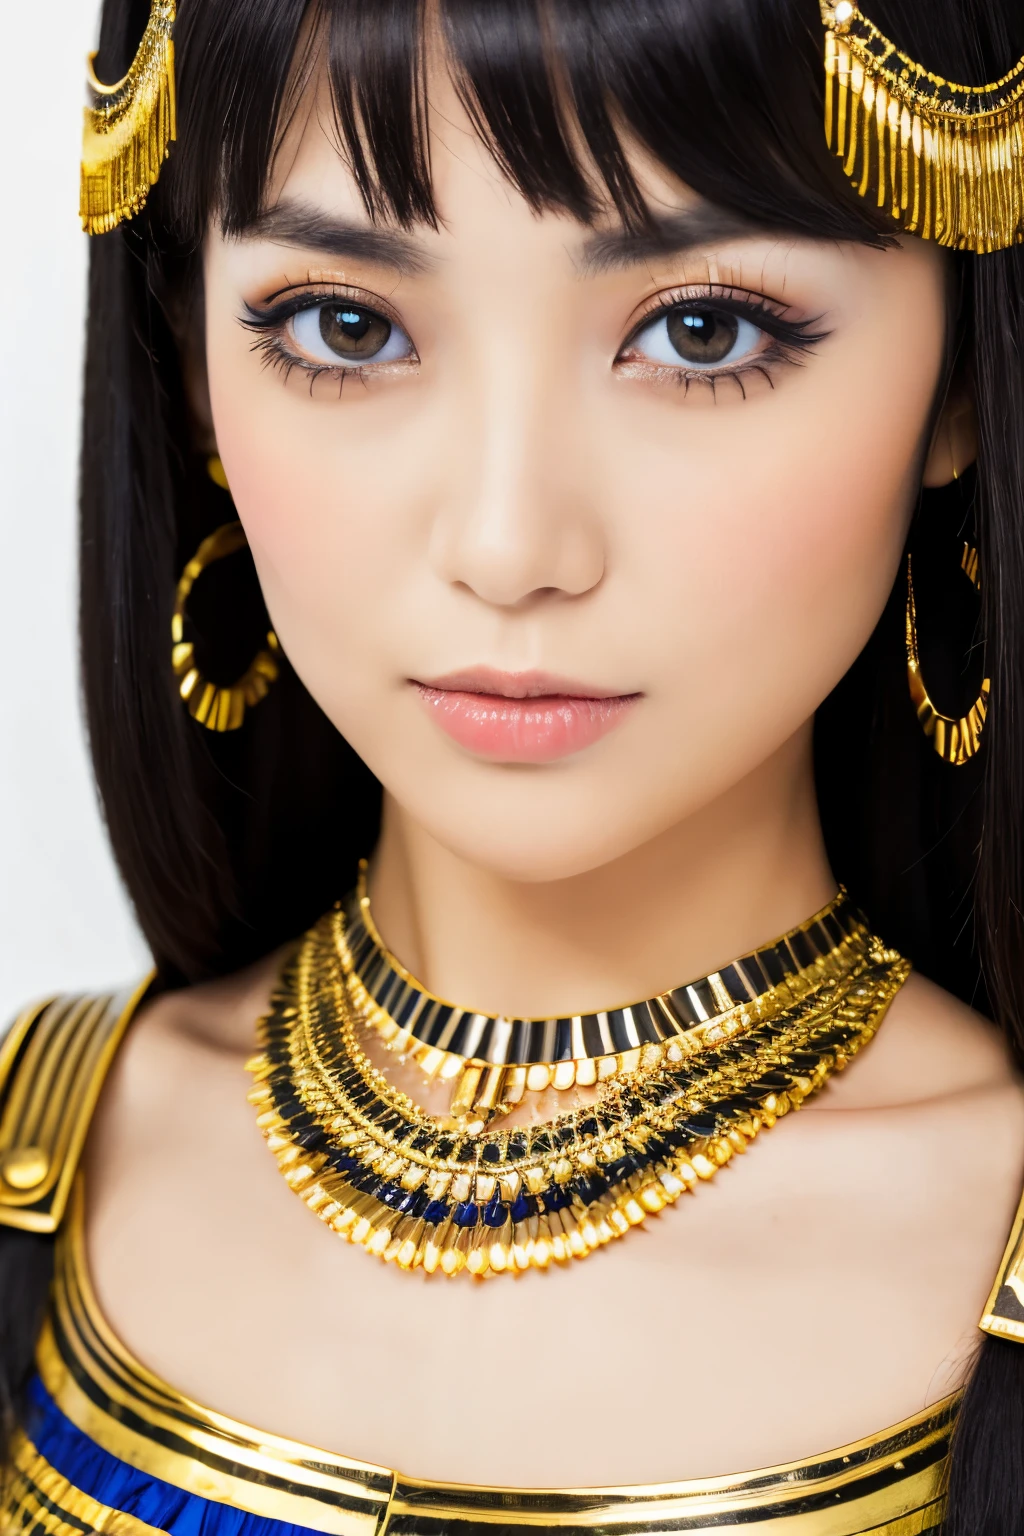 Obra maestra, alta calidad, alta resolución, 8k, Japonesa flaca disfrazada de Cleopatra, hermoso rostro, maquillaje de cleopatra, cara detallada, ojos detallados